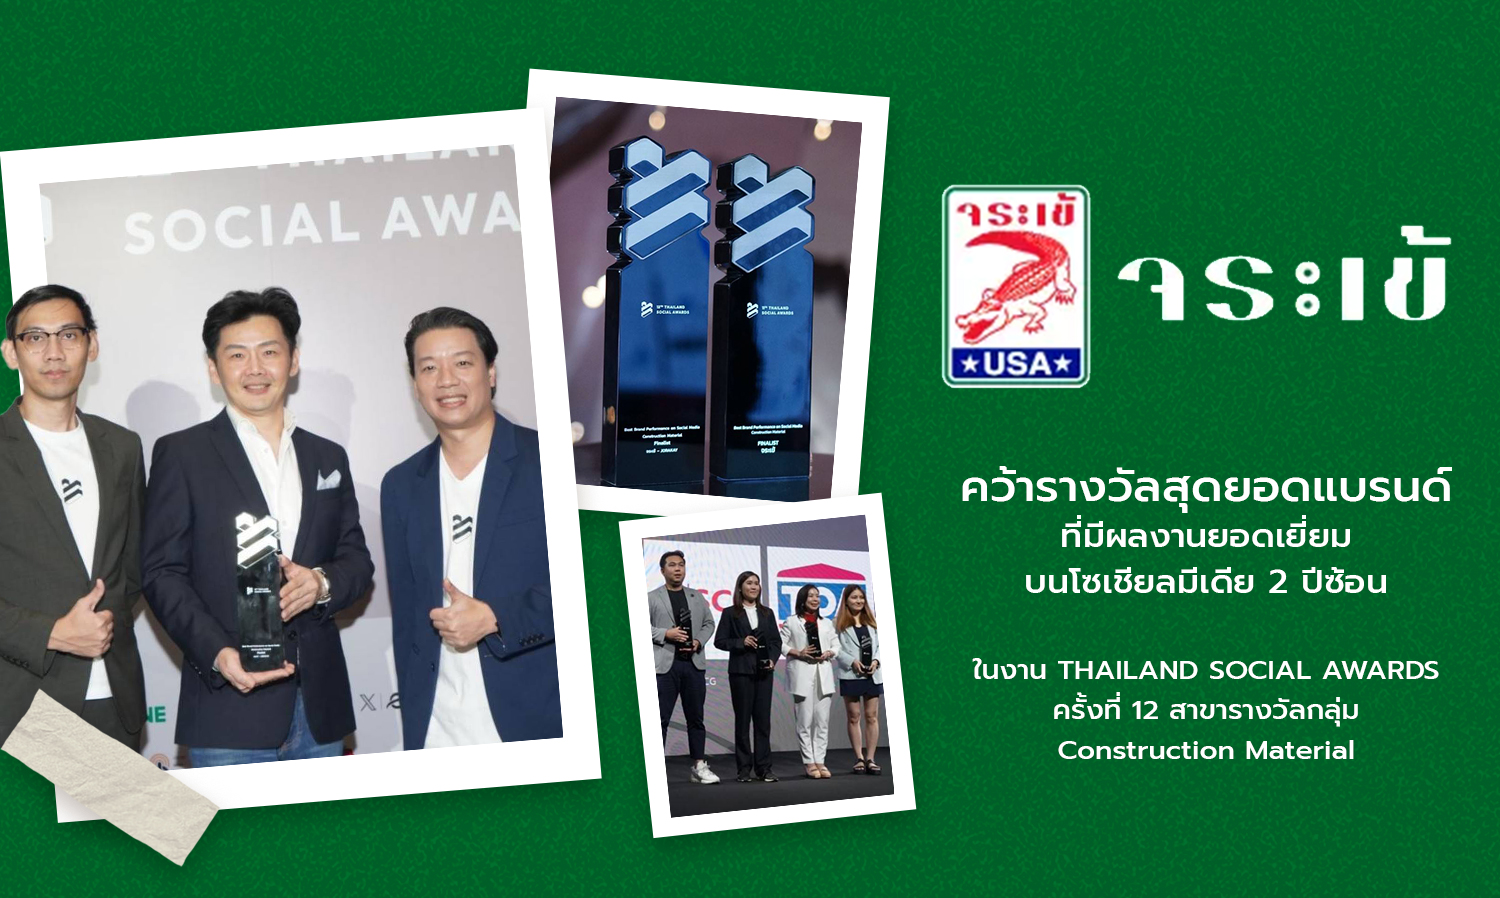 จระเข้ คว้ารางวัลสุดยอดแบรนด์ที่มีผลงานยอดเยี่ยมบนโซเชียลมีเดีย 2 ปีซ้อน ในงาน THAILAND SOCIAL AWARDS ครั้งที่ 12 สาขารางวัลกลุ่ม Construction Material